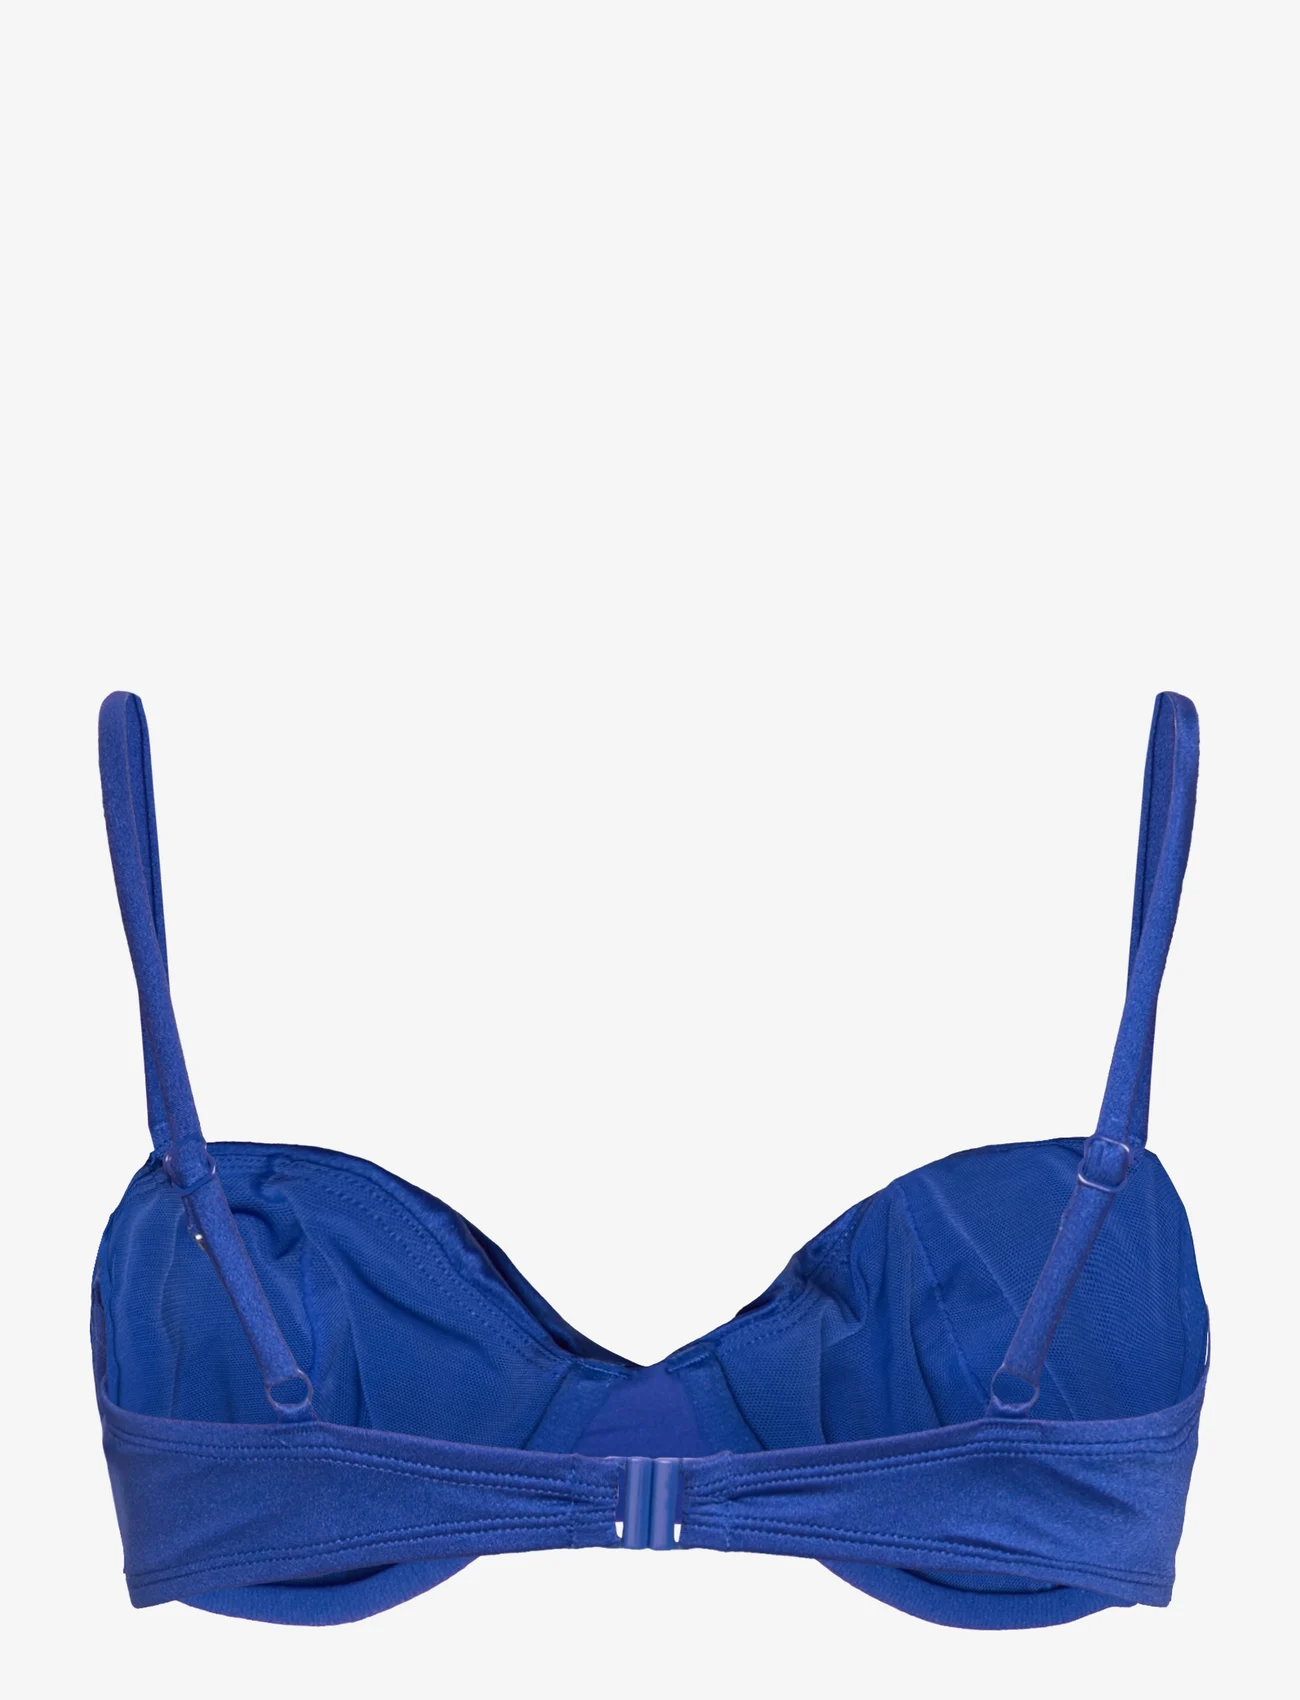 Hunkemöller - Bari ub - bikinitoppe med bøjle - cobalt blue - 1